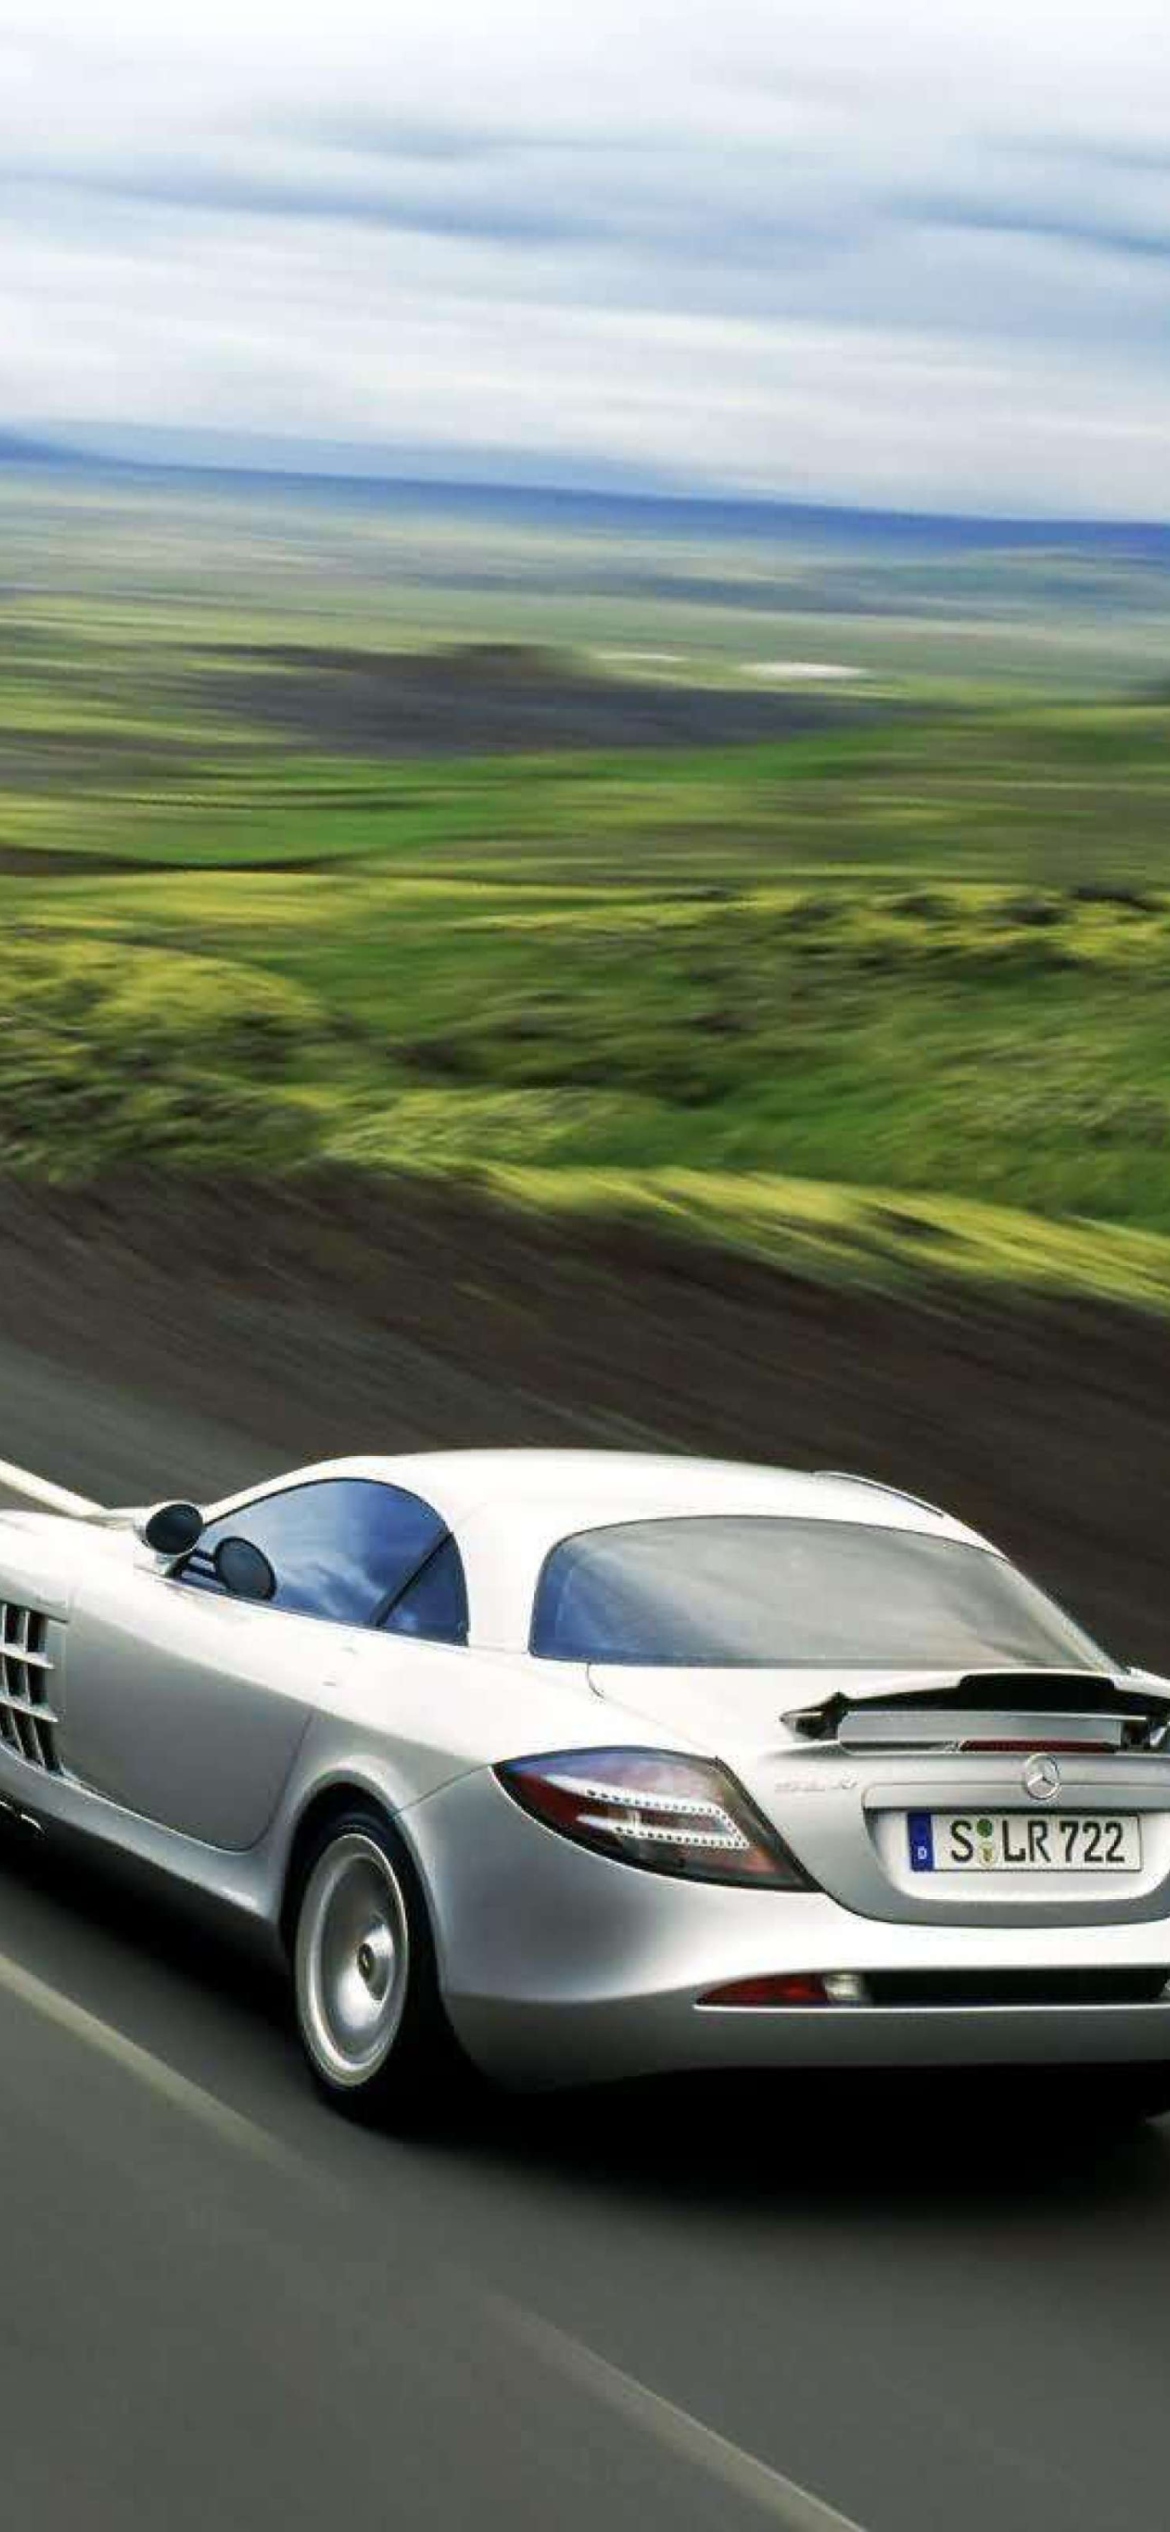 Das SLR Mclaren Mercedes Benz Wallpaper 1170x2532